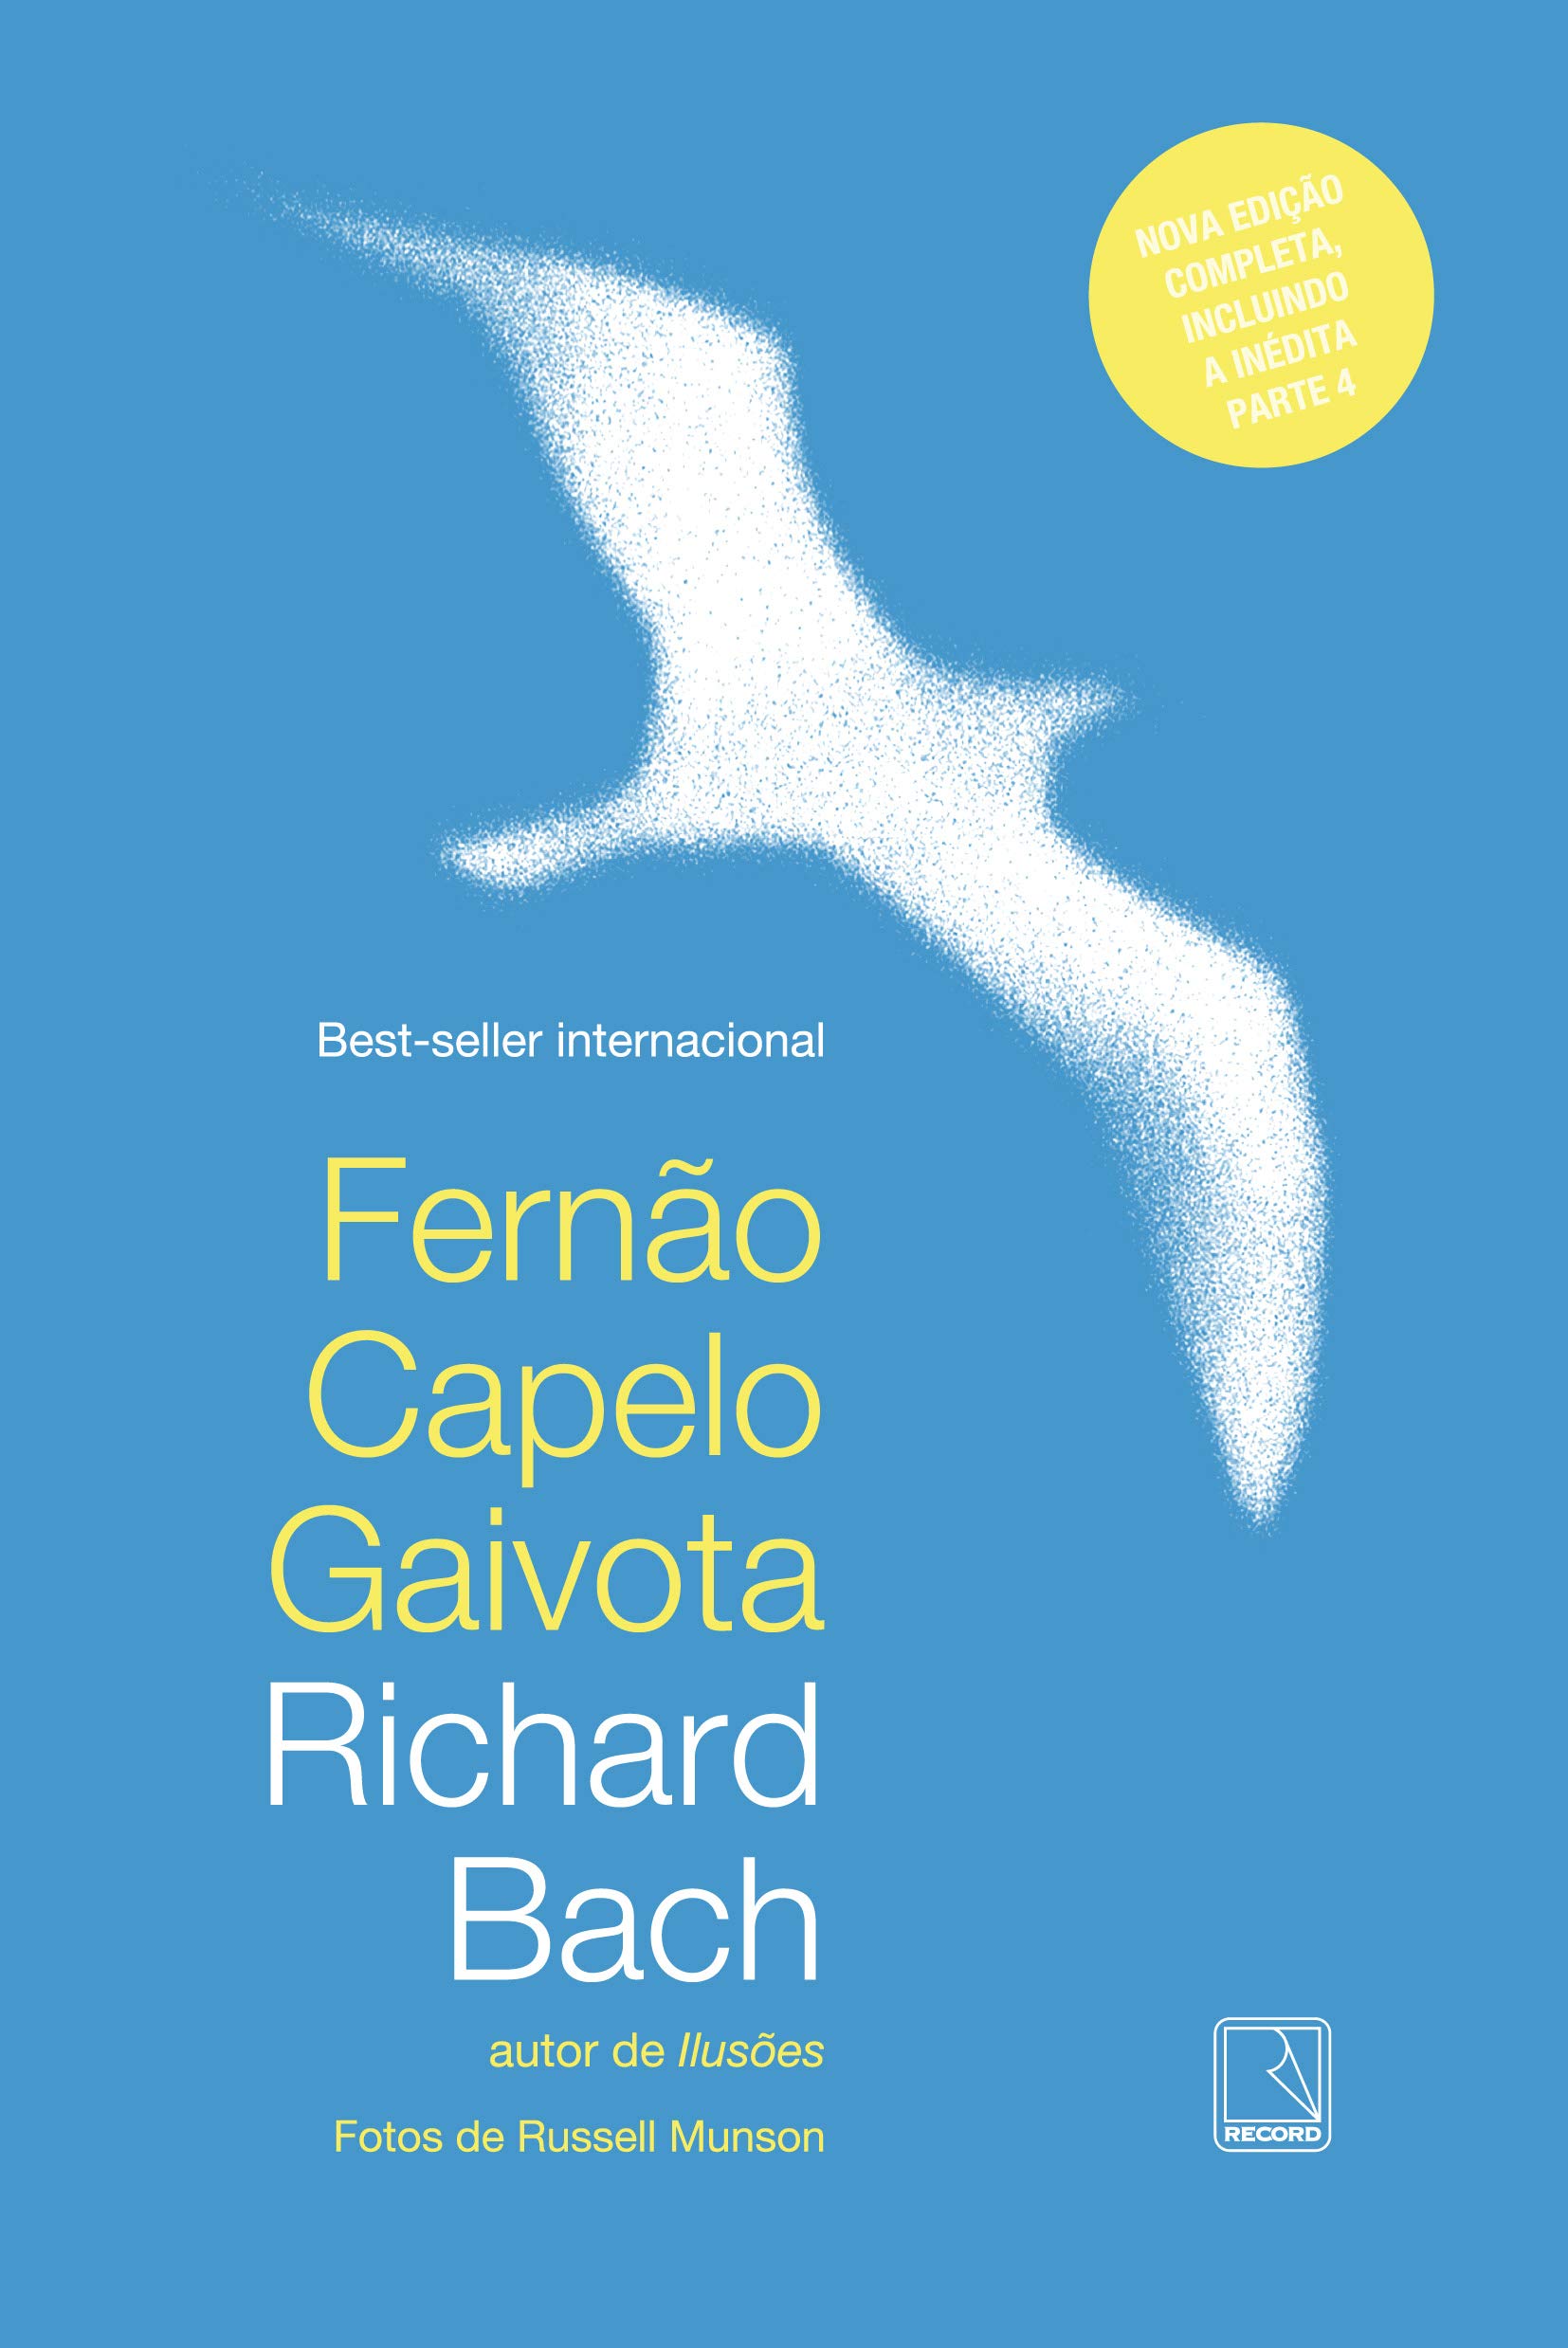 Imagem: 71ynUi8oFVL Conheça a história de Fernão, uma gaivota fora do comum